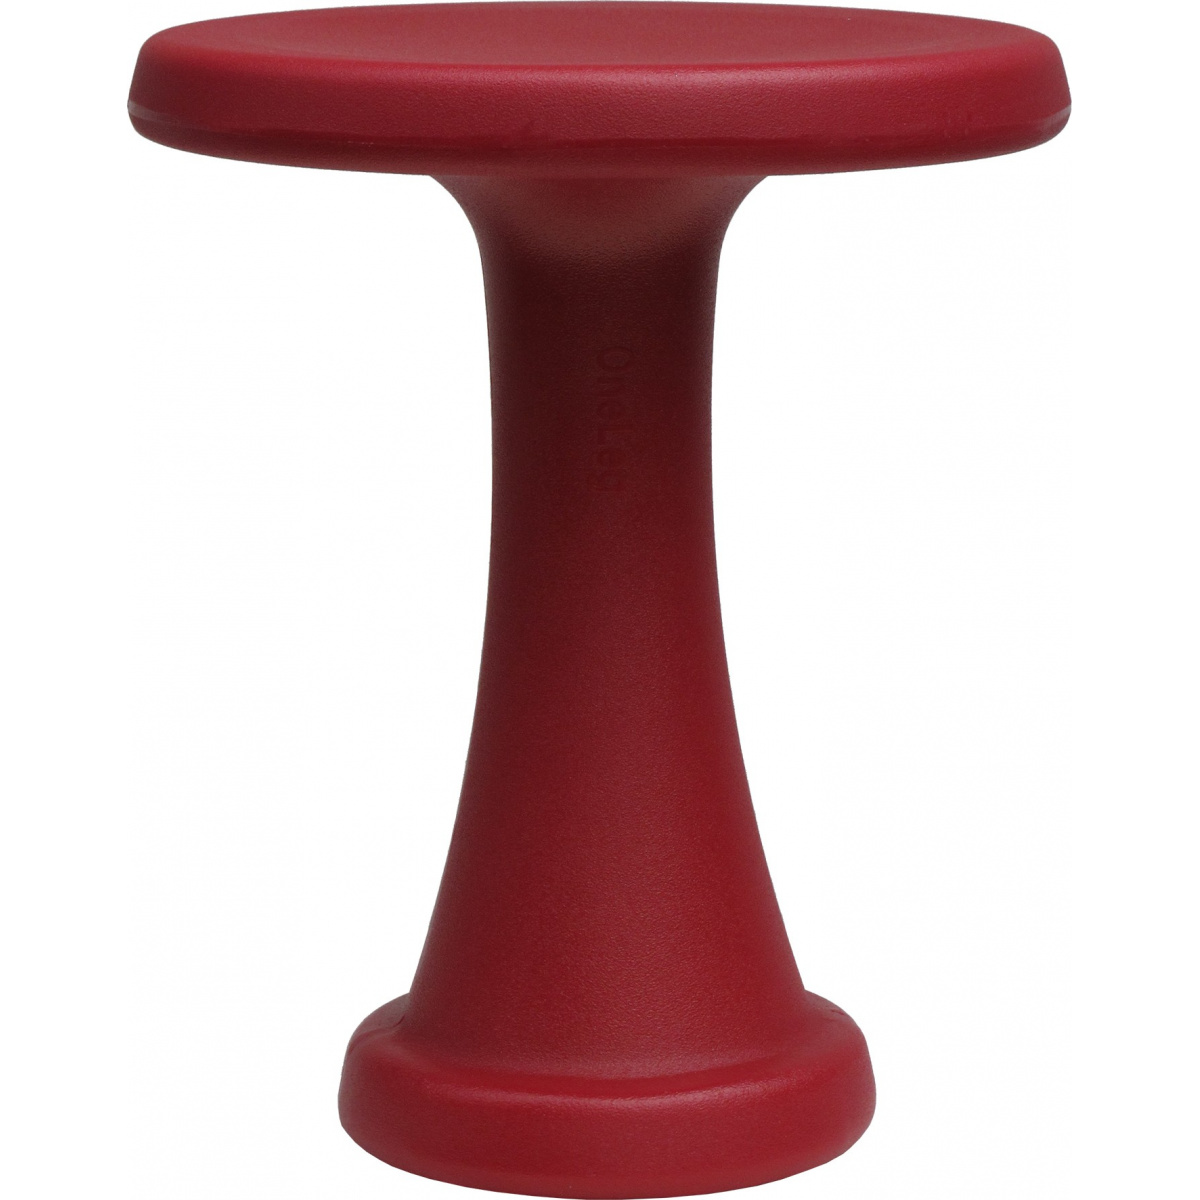 OneLeg stool, 32 cm - red